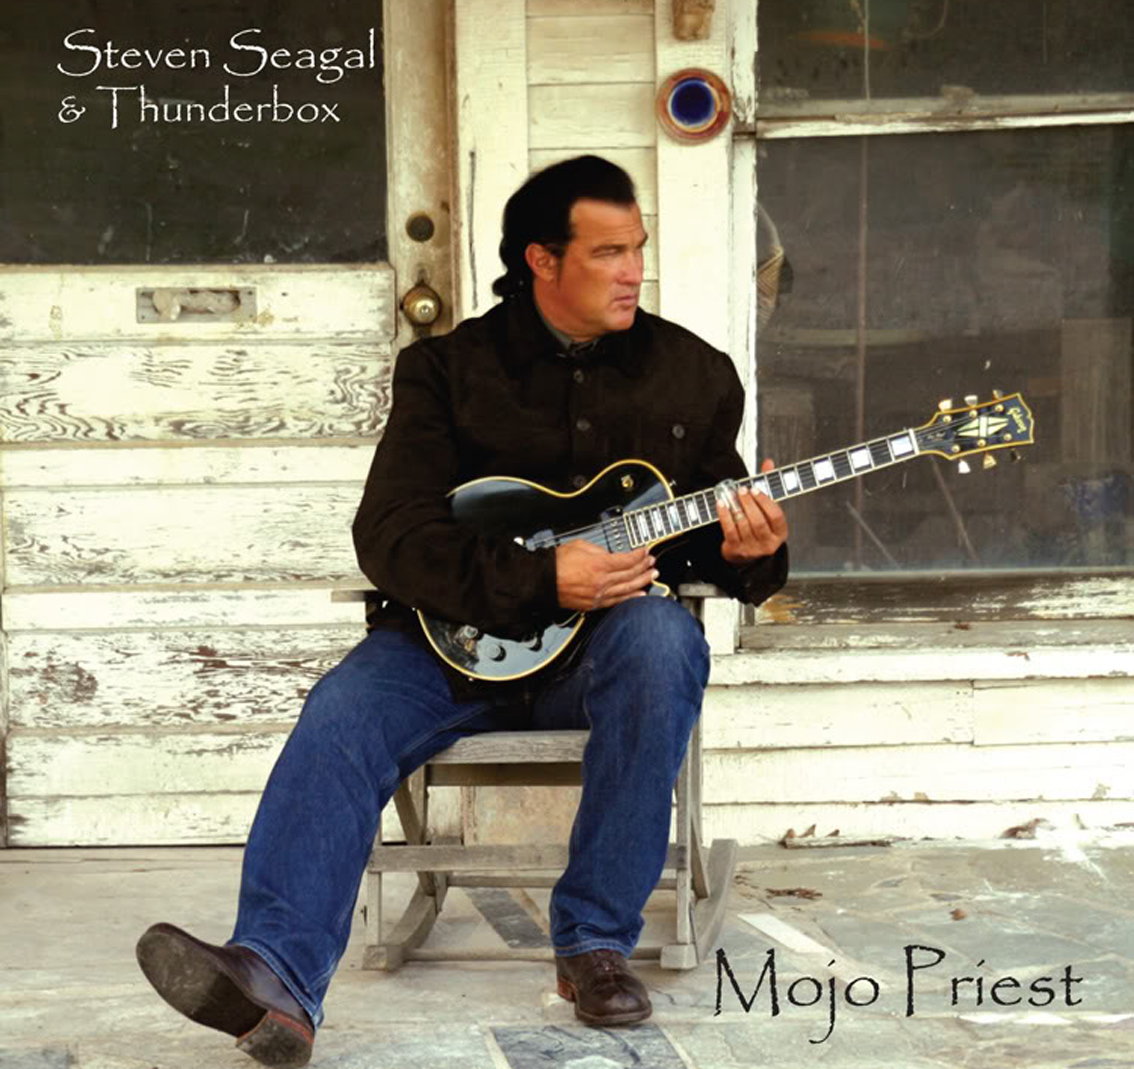 Steven Seagal - Mojo Priest (2006)